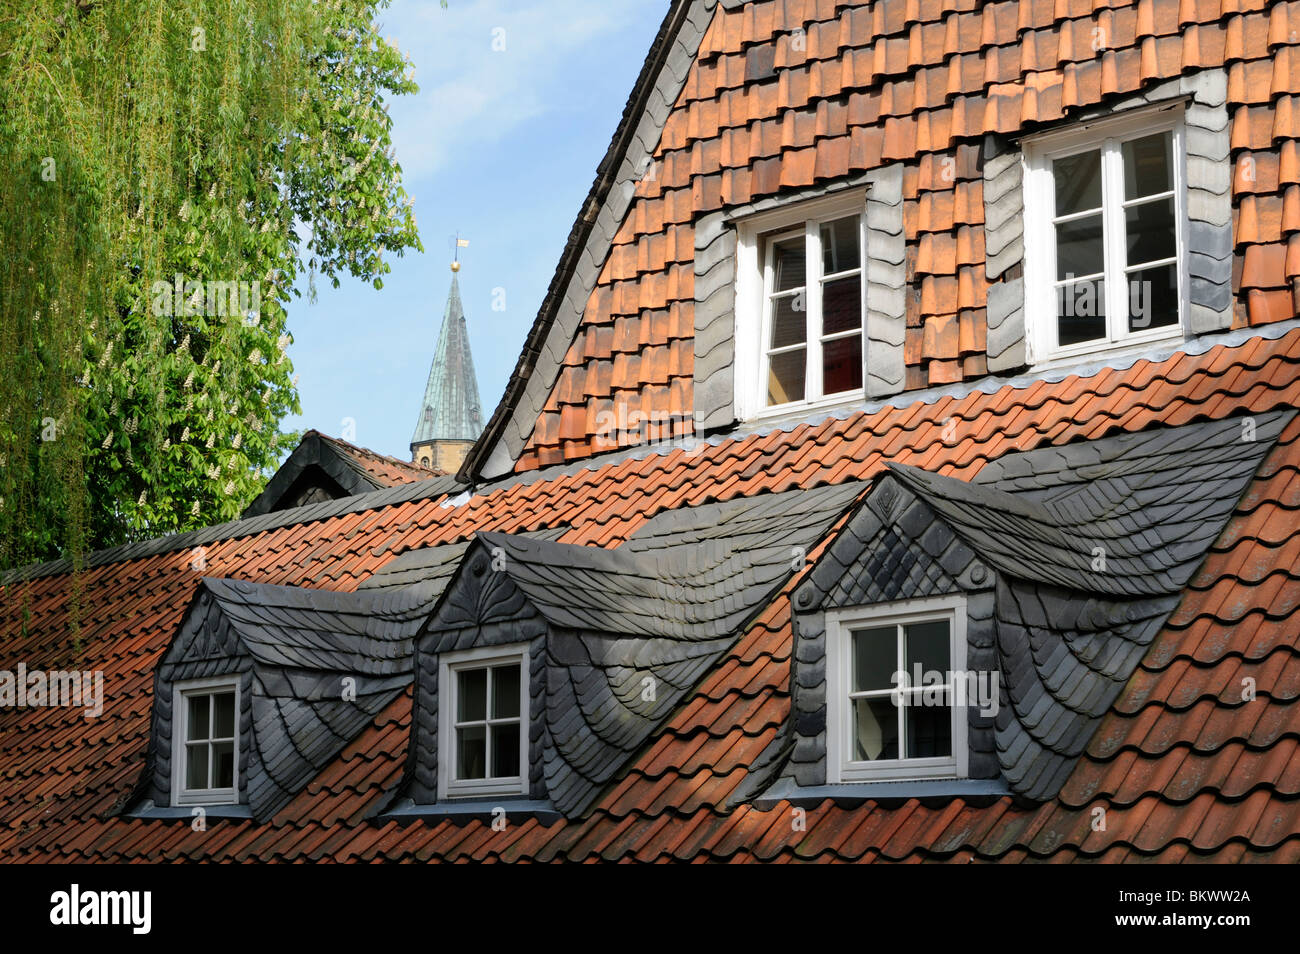 Eines Baustil Typischer Hauses en Goslar, Alemania. - Estilo arquitectónico típico de la casa en Goslar, Alemania. Foto de stock